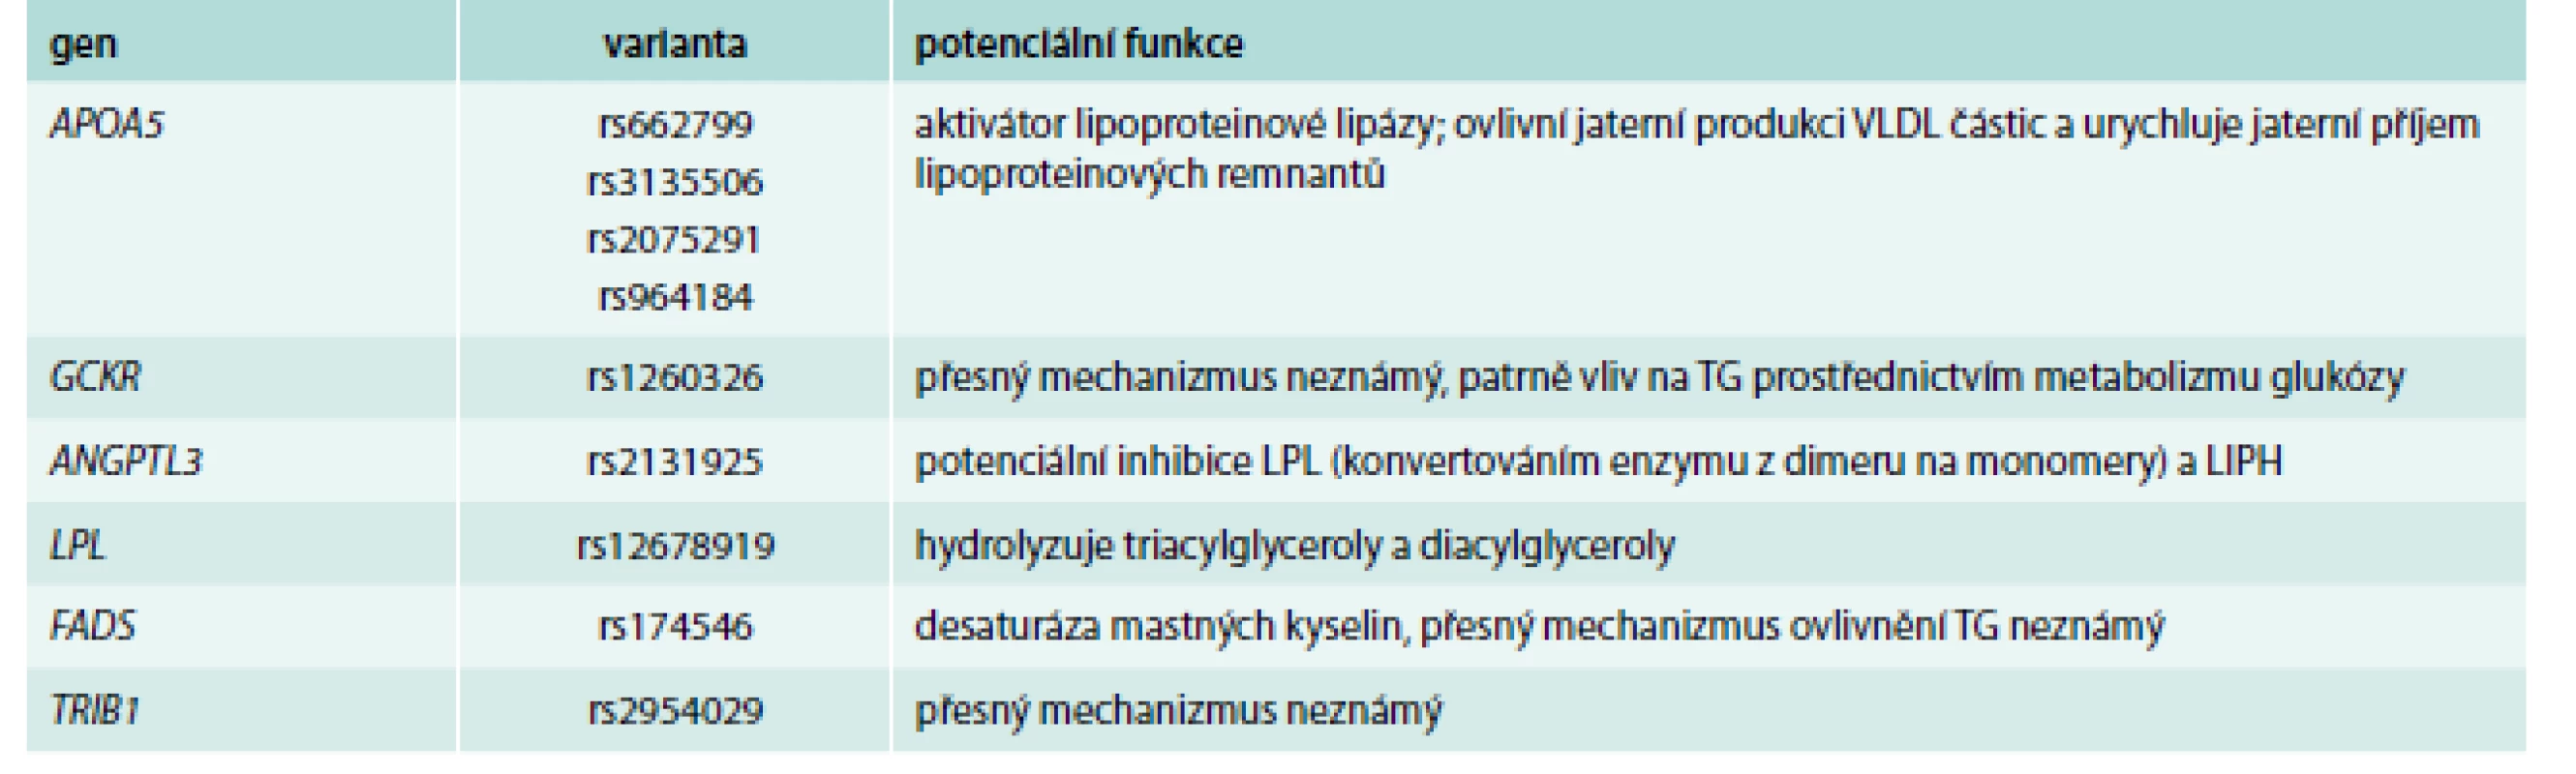 Příklady genů/polymorfizmů ovlivňujících především hladiny triglyceridů